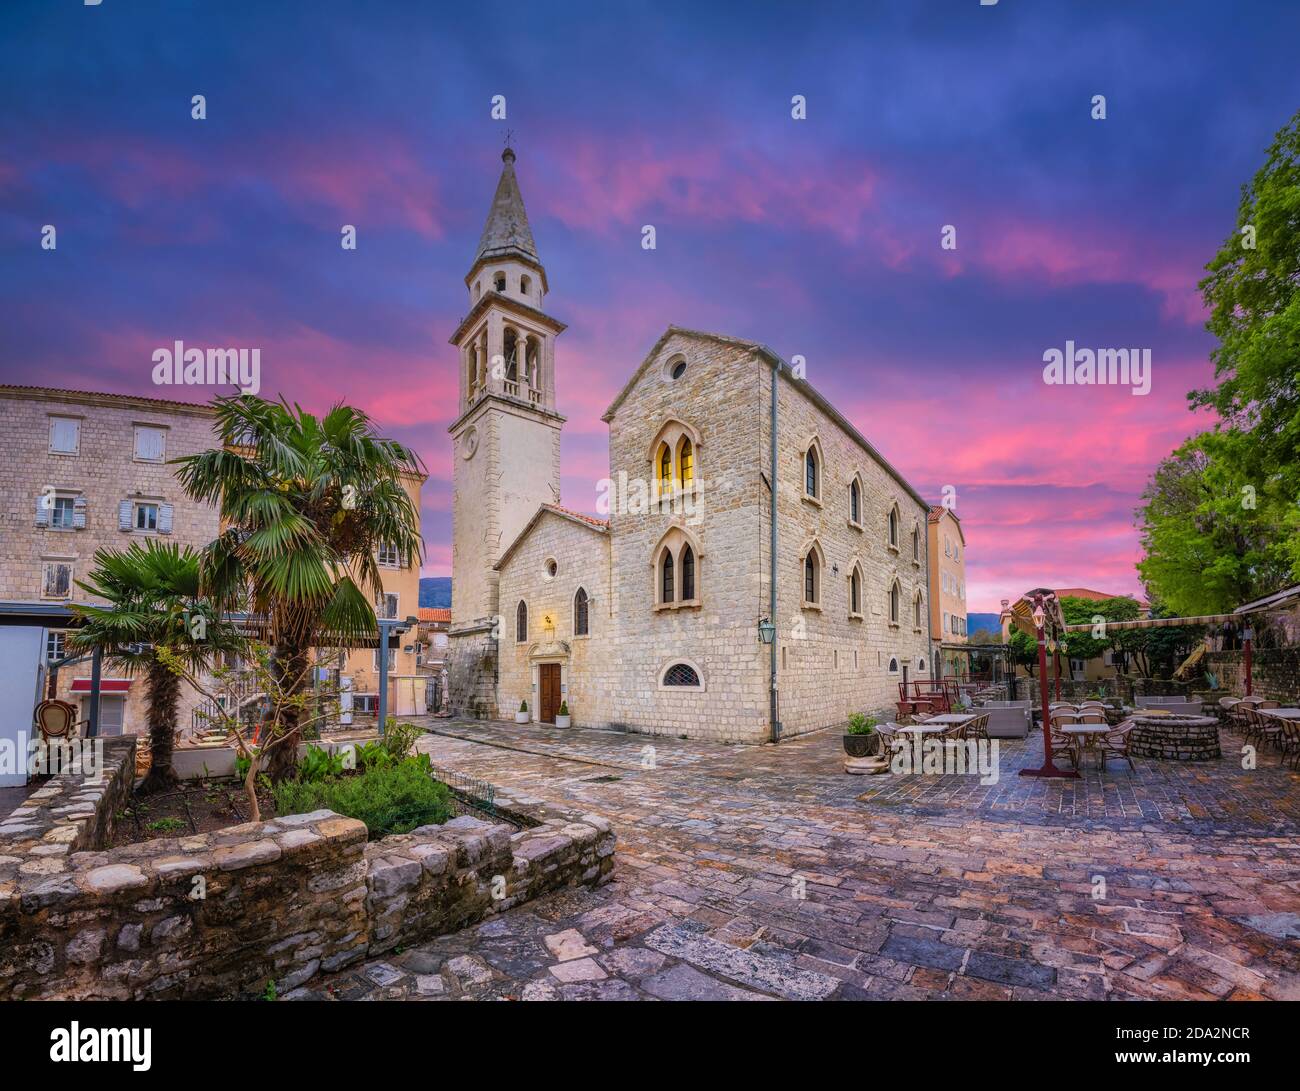 Città vecchia di Budva, Montenegro. Immagine HDR della Chiesa di San Ivan Foto Stock